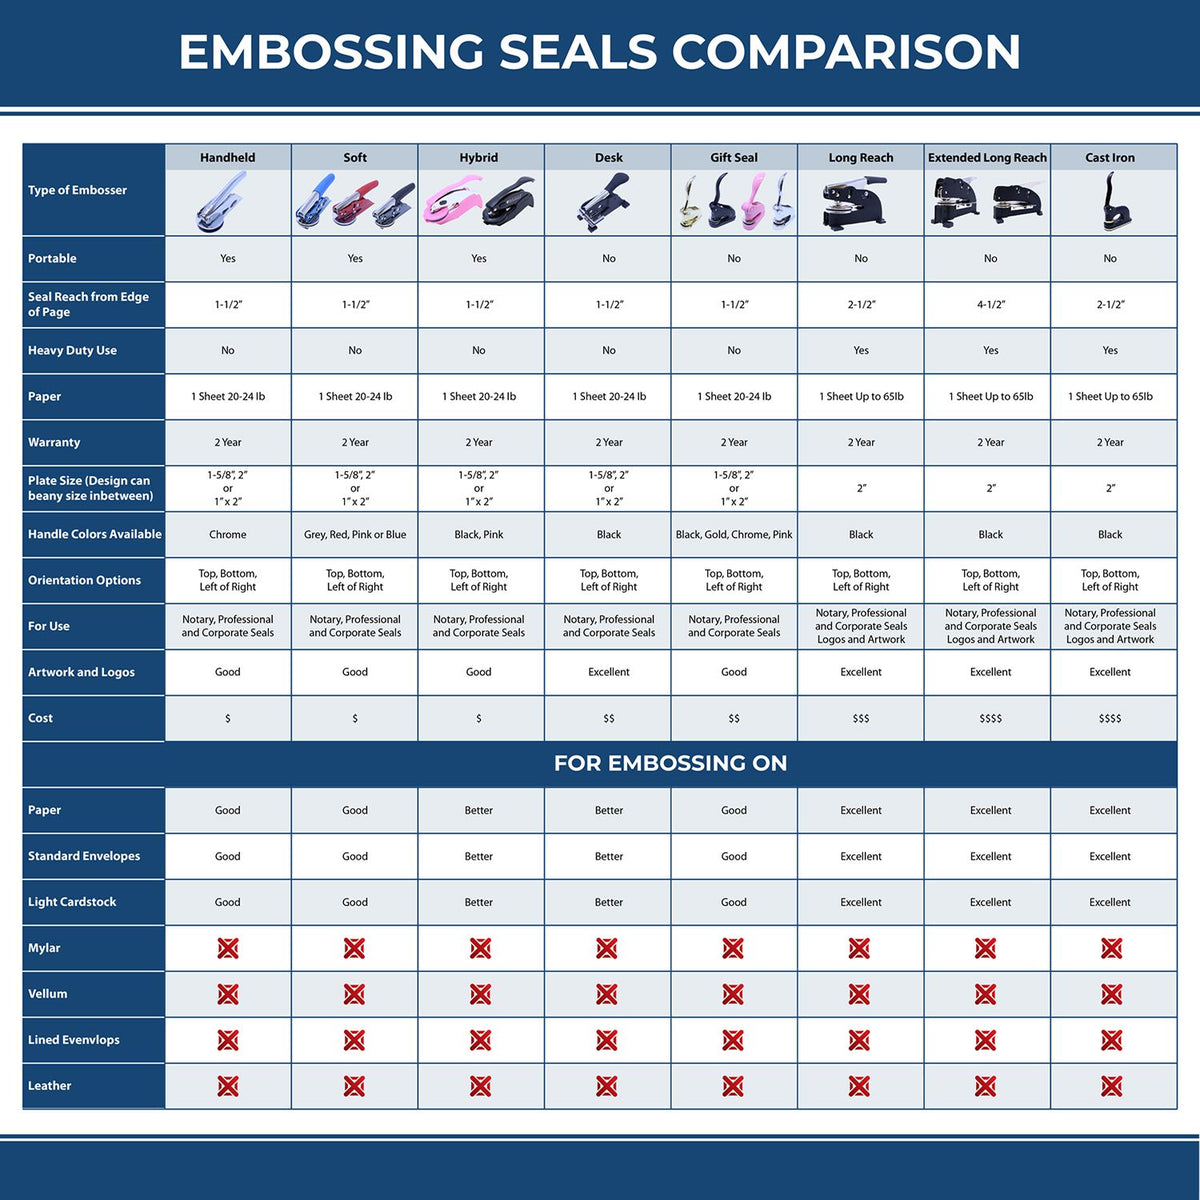 Engineering Geologist Desk Seal Embosser 3002ENGEO Embossing Seal Comparison